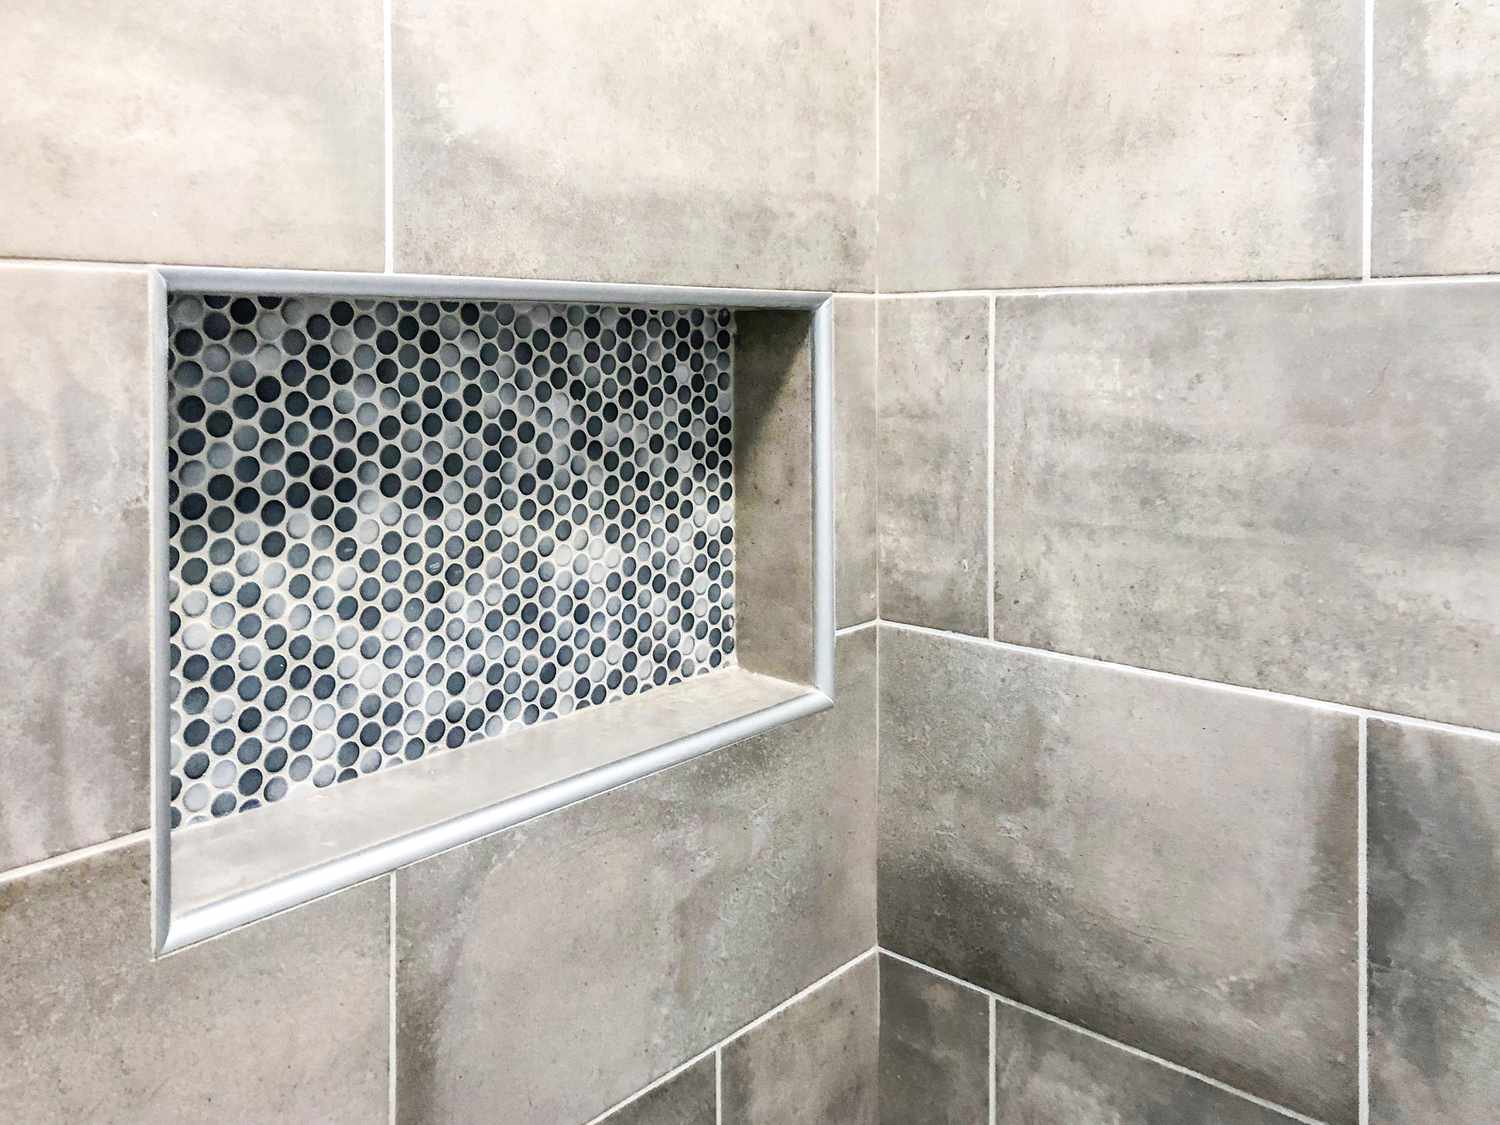 Azulejos de porcelana de pared de baño moderno en tono de color gris con nicho de pared rectangular decorativo personalizado para champú y jabón